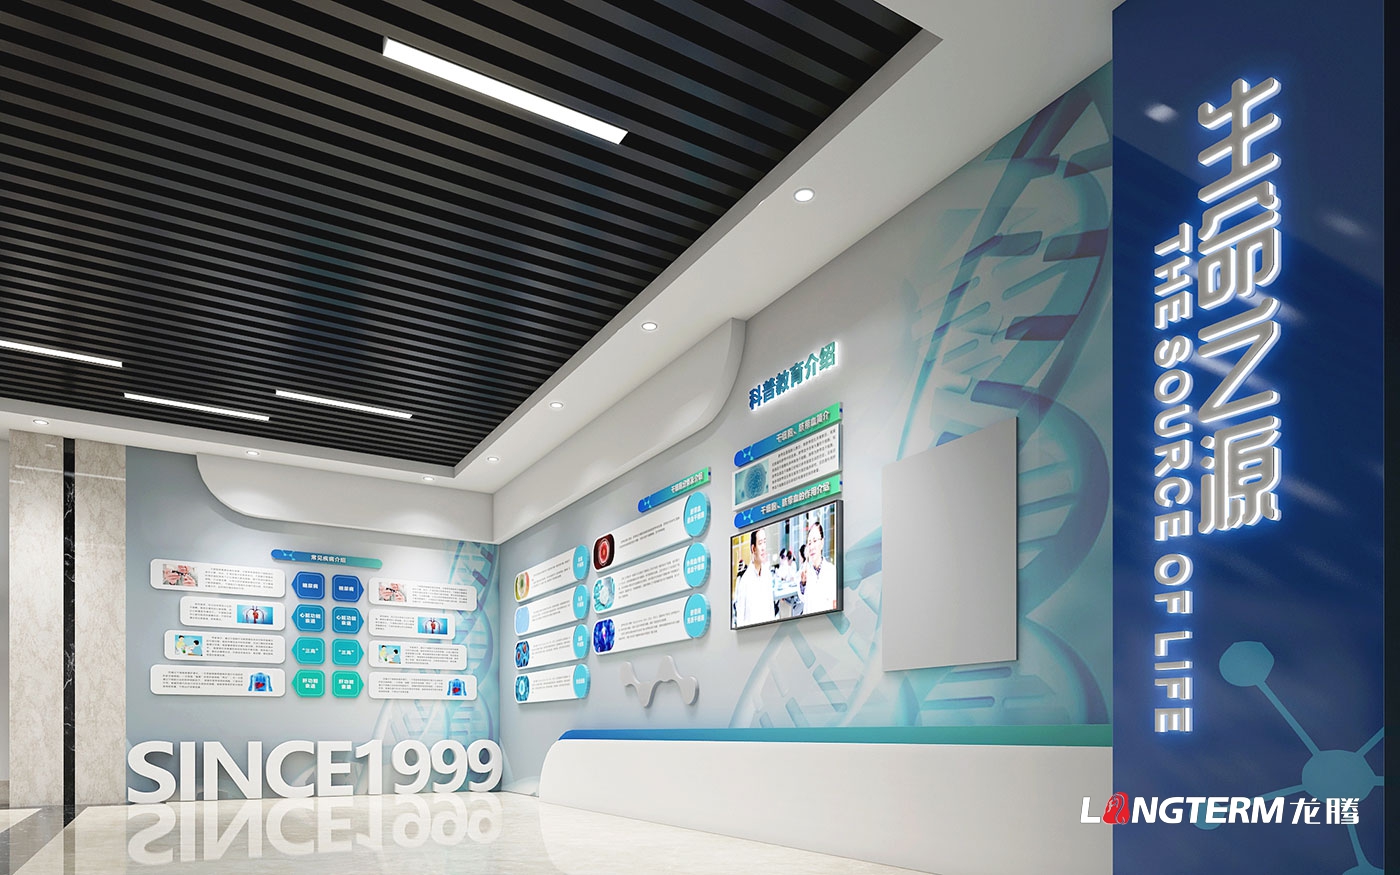 成都市科普教育基地(新生命干細胞)大廳升級改造設計效果圖——科技化、數字化、互動化展覽展示